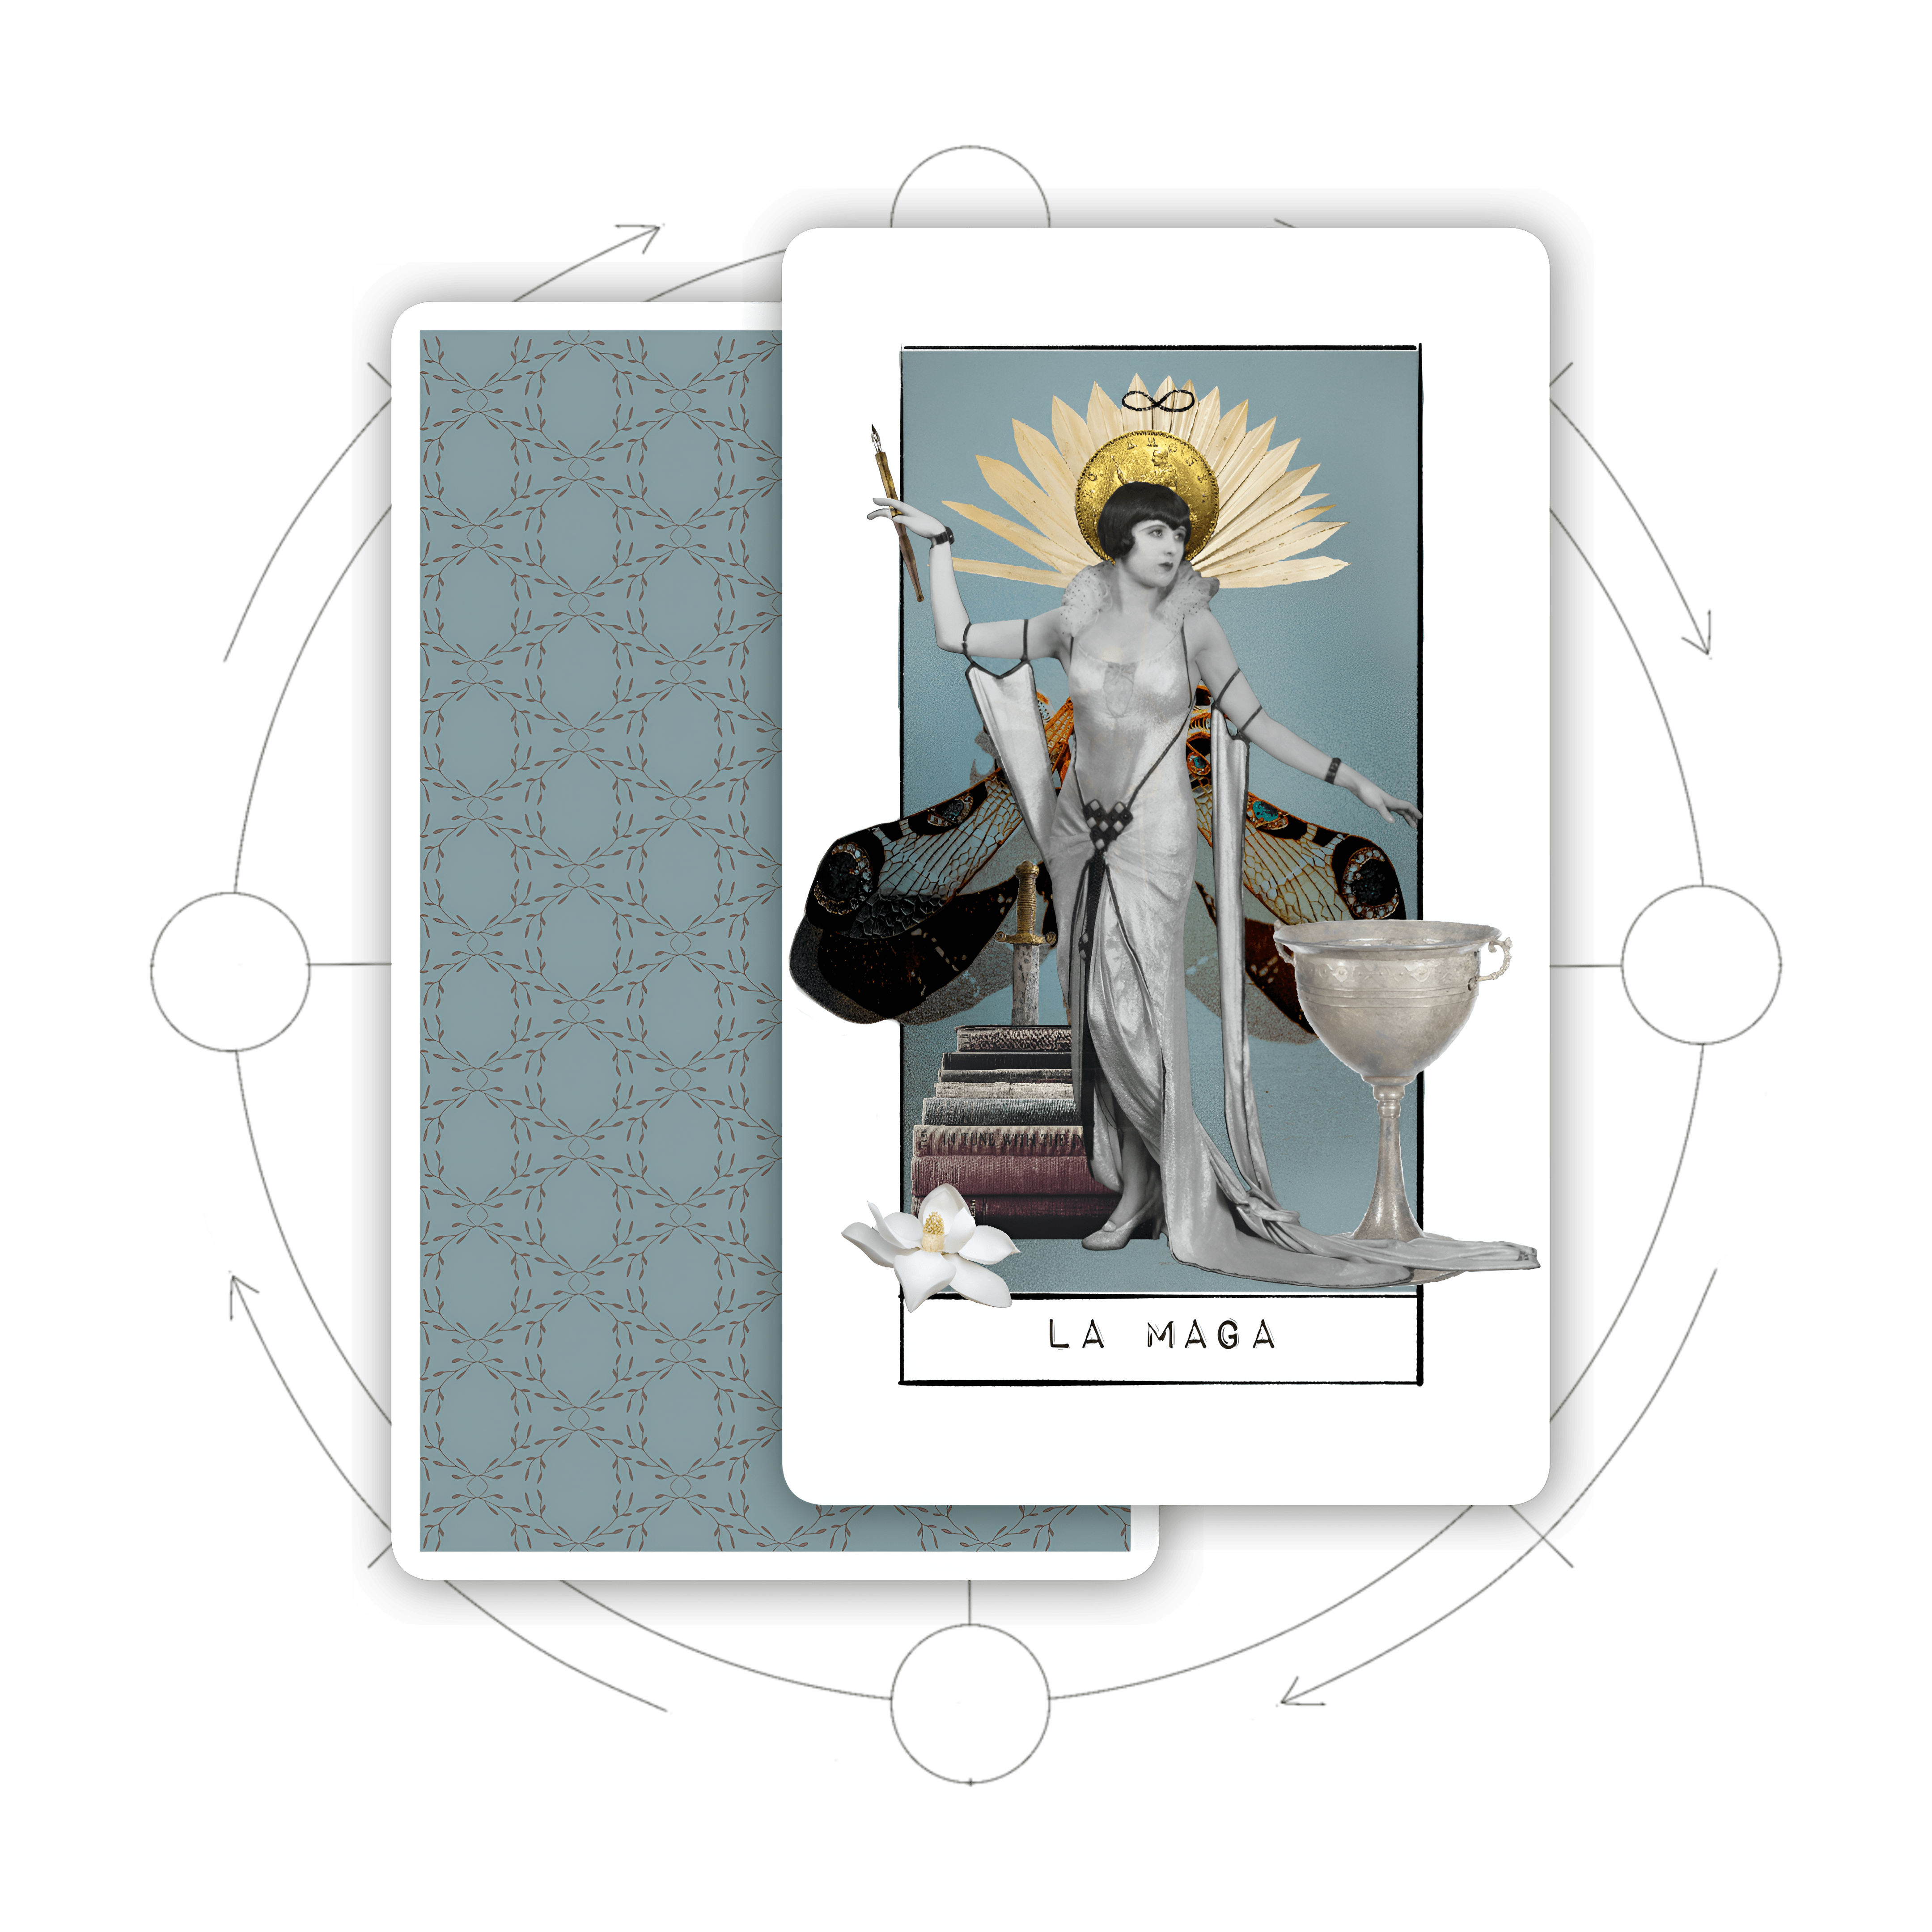 Immagine per servizio Tarografia, che offre percorsi attraverso gli arcani maggiori per destini illuminati nella lettura dei tarocchi.